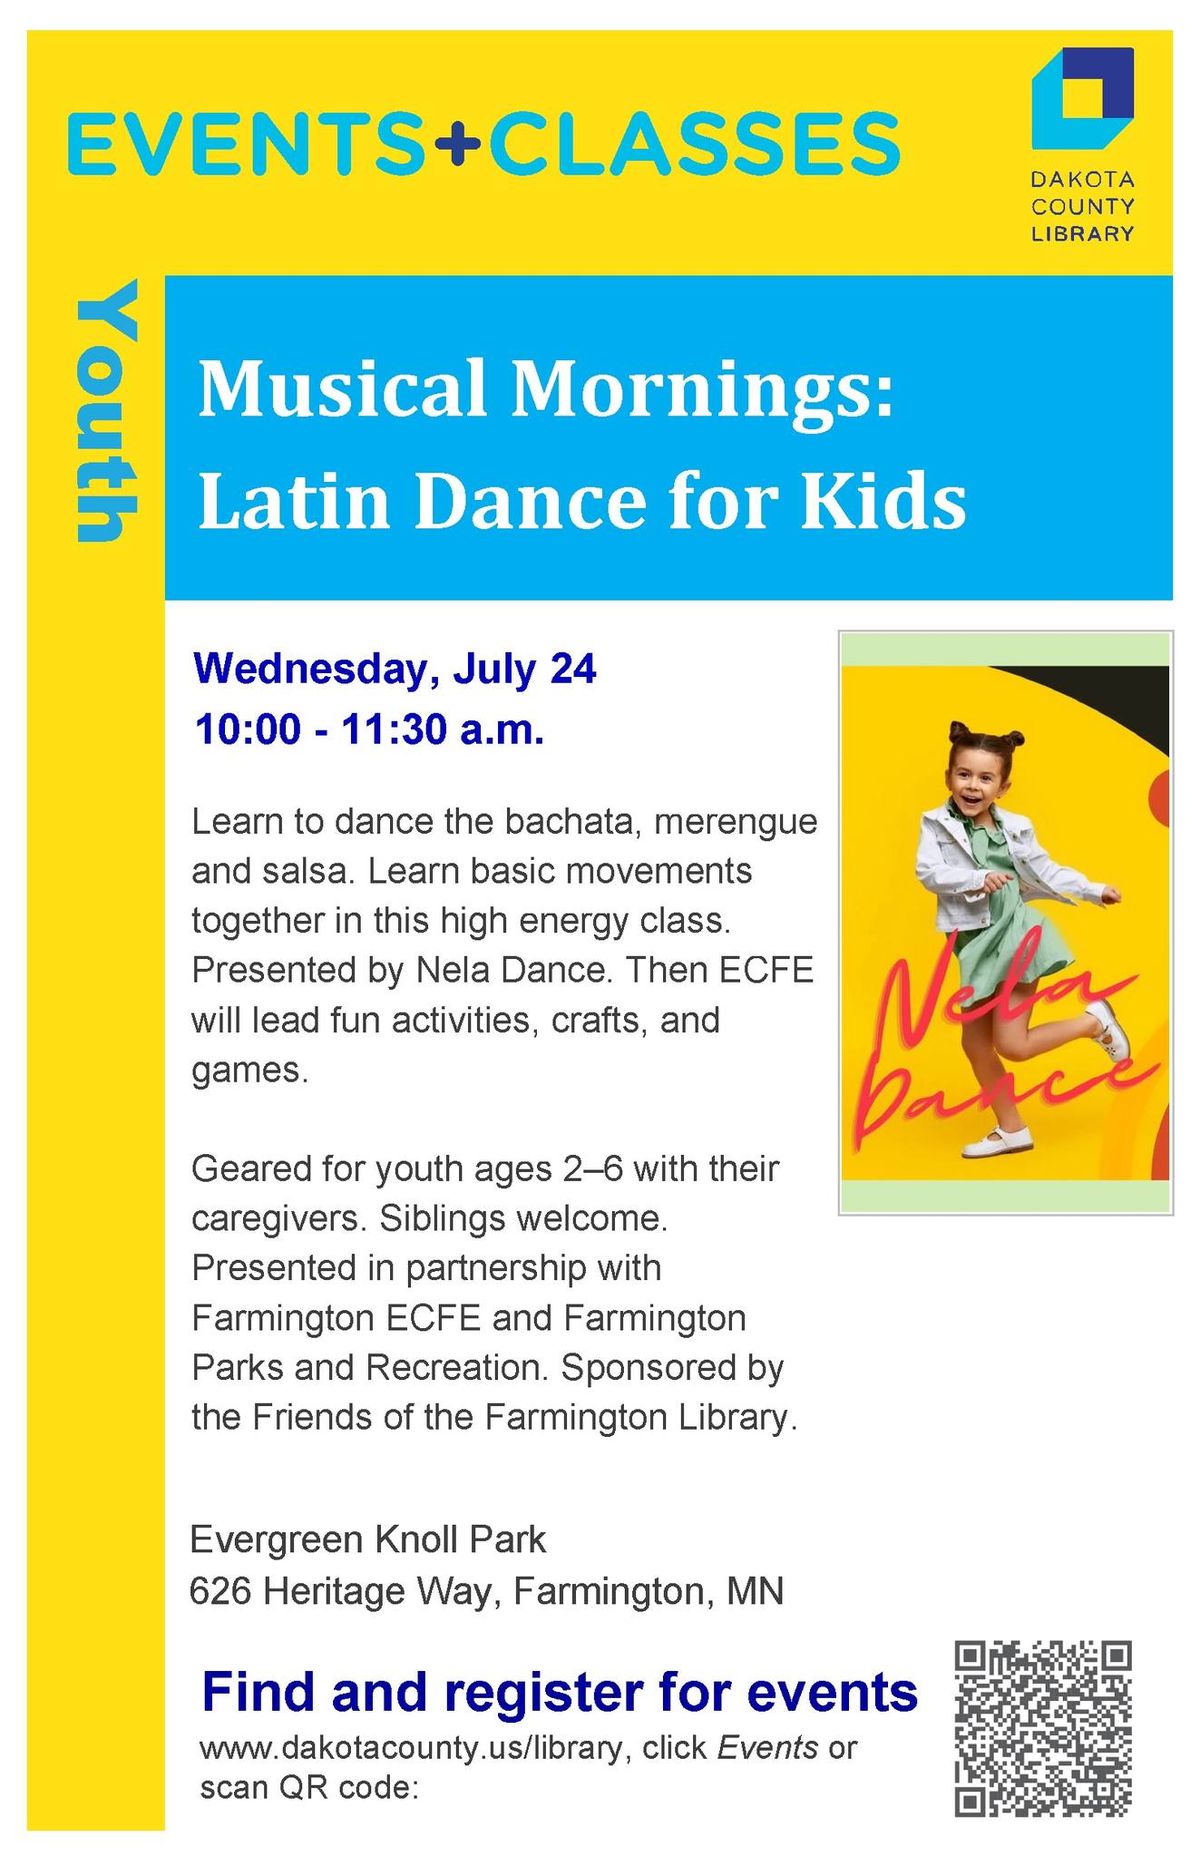 Musical Mornings: Latin Dance for Kids